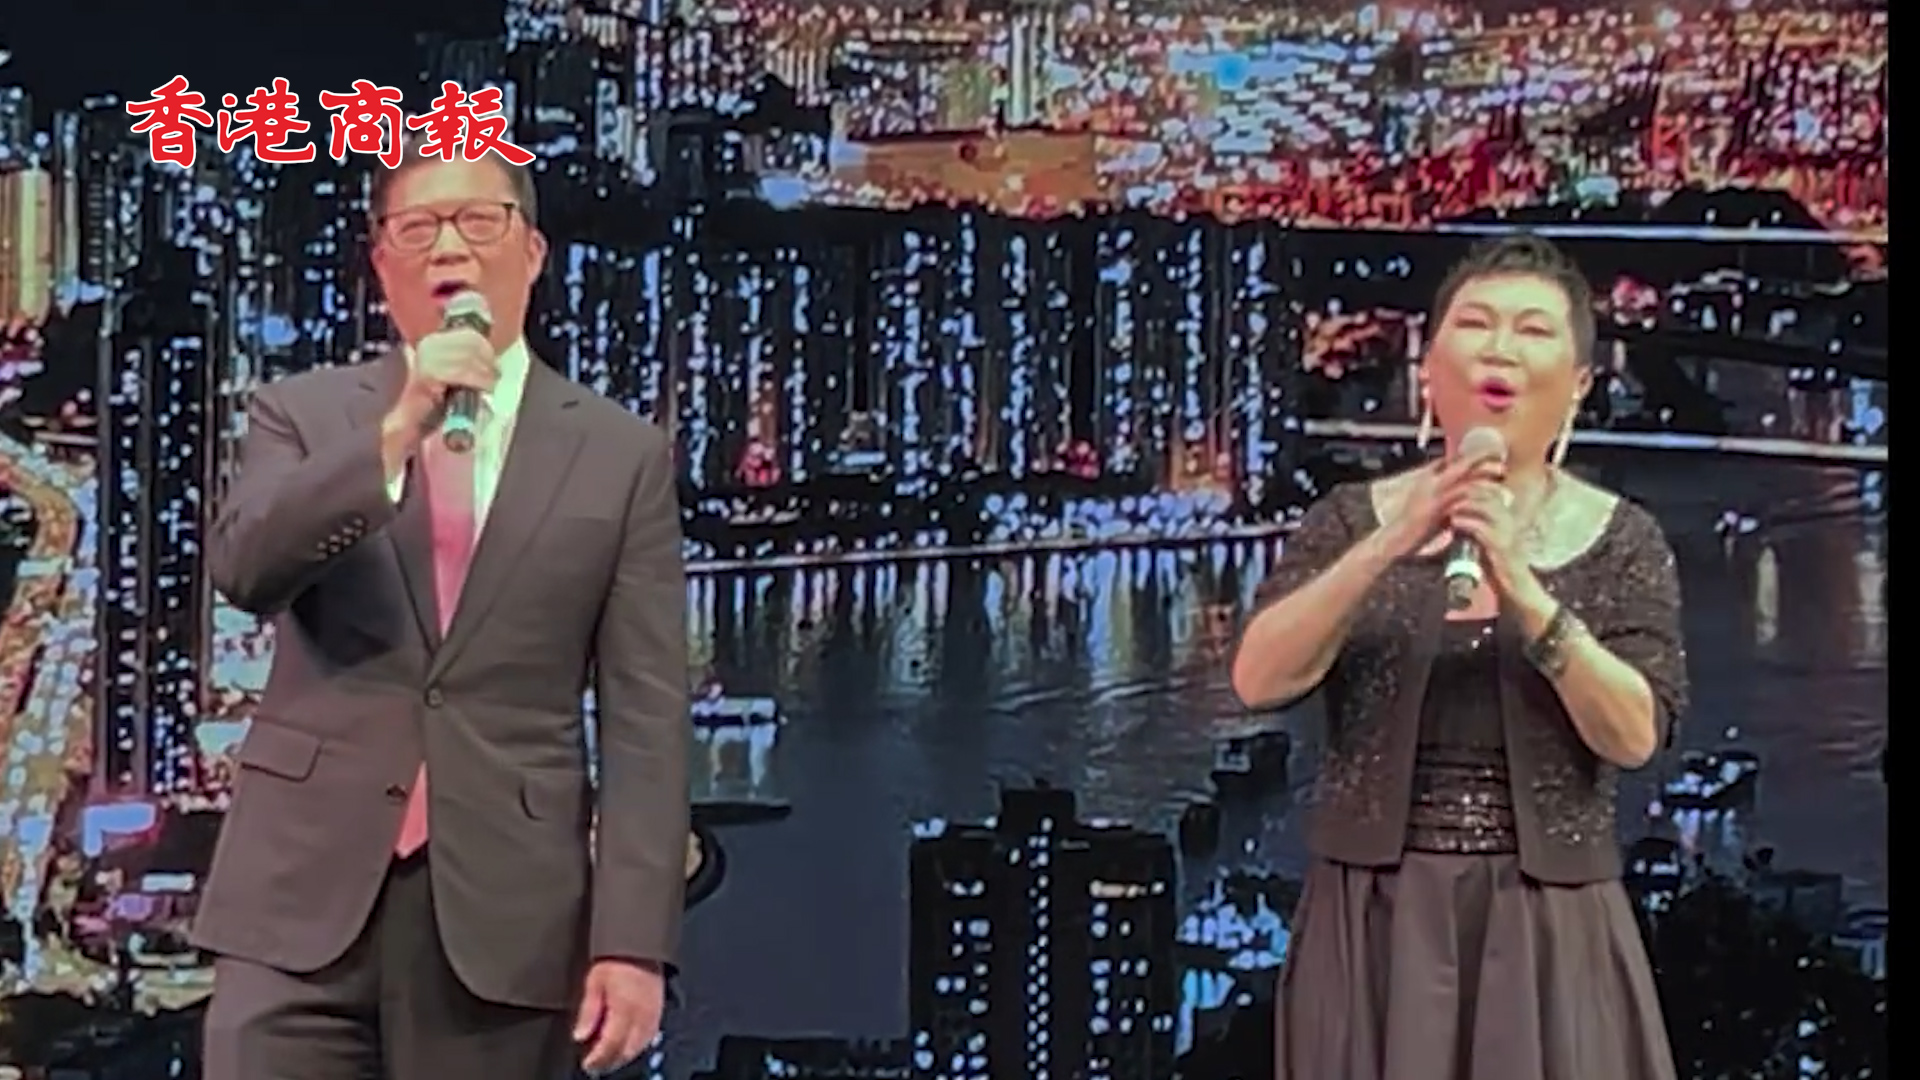 有片丨傳承香港文化 鄧炳強與陳潔靈合唱《獅子山下》